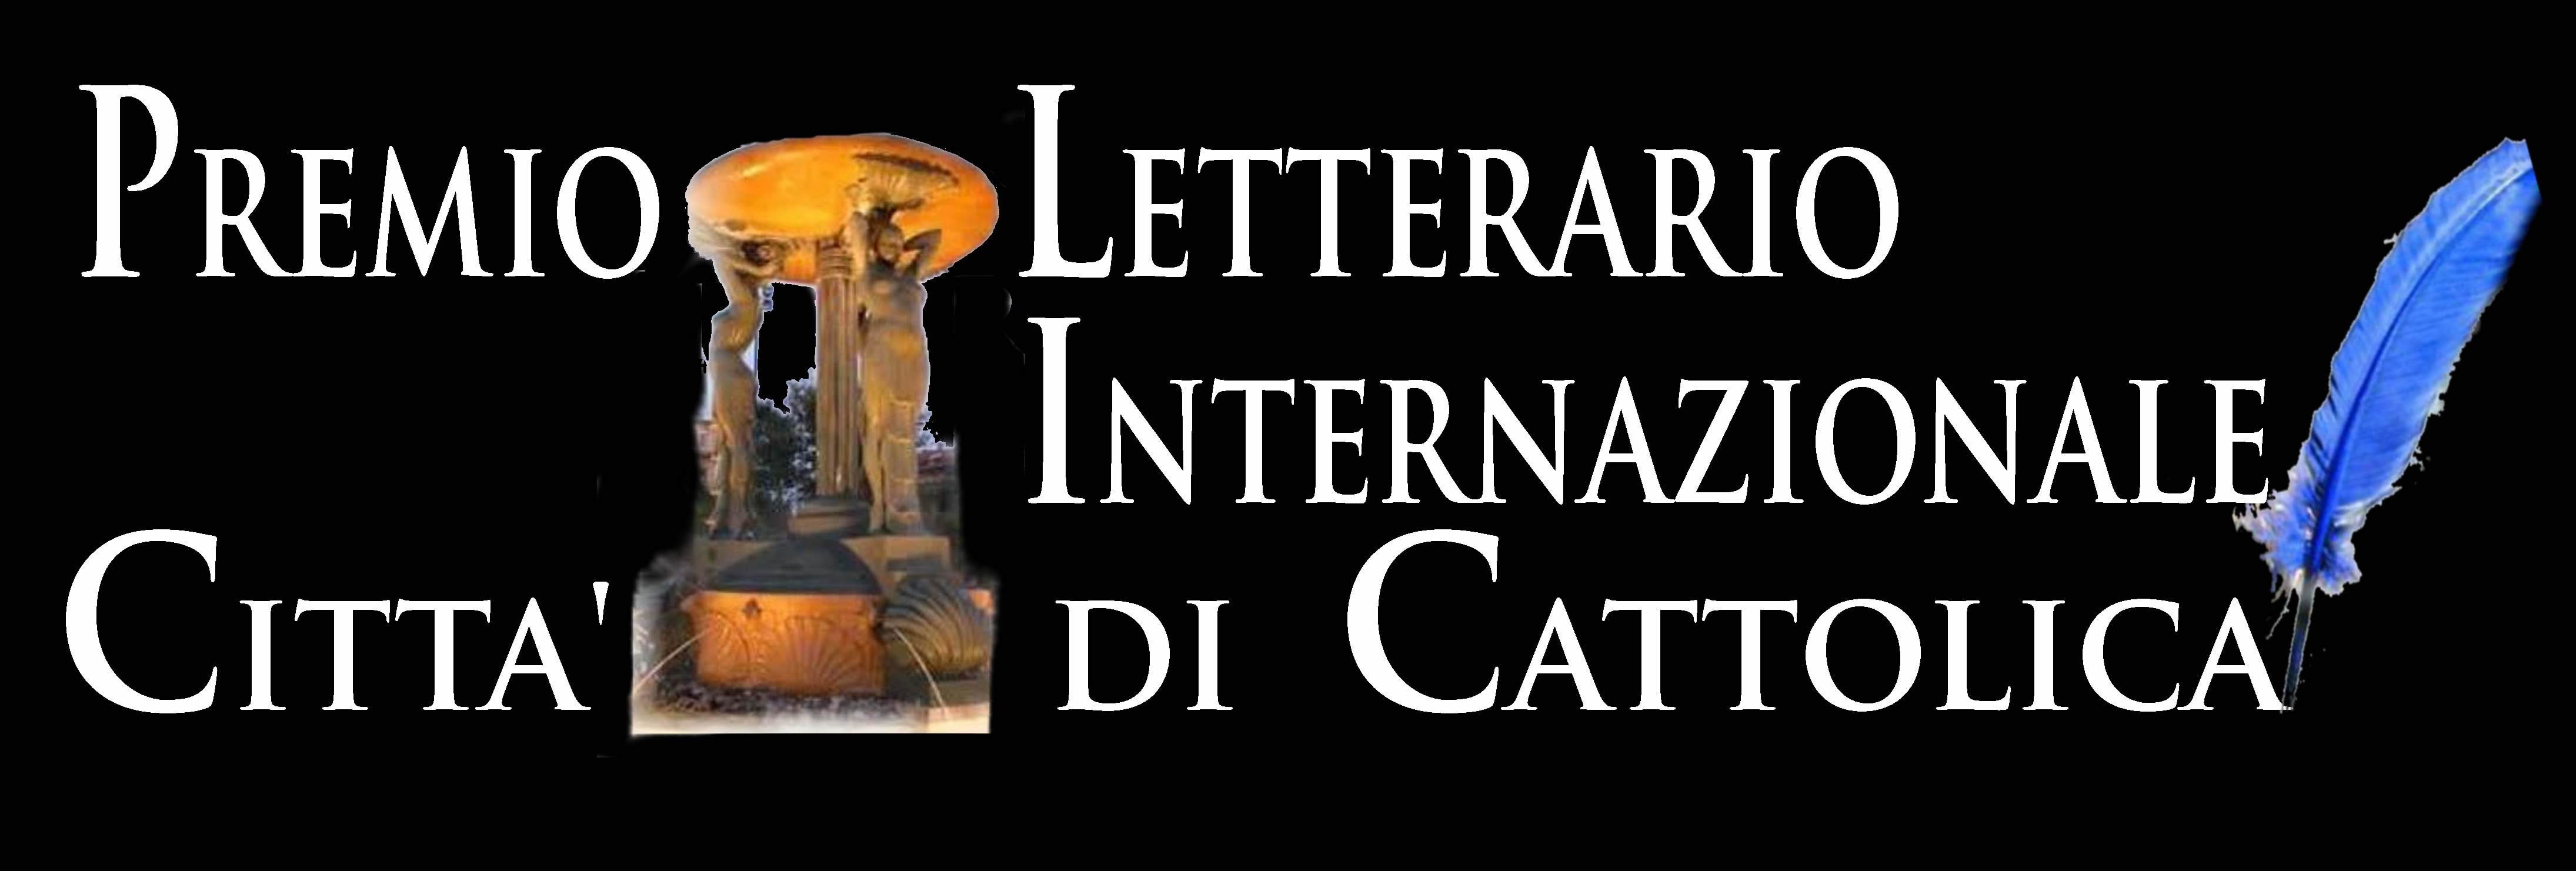 Premio Letterario Internazionale Città di Cattolica – Pegasus Literary Awards 2020